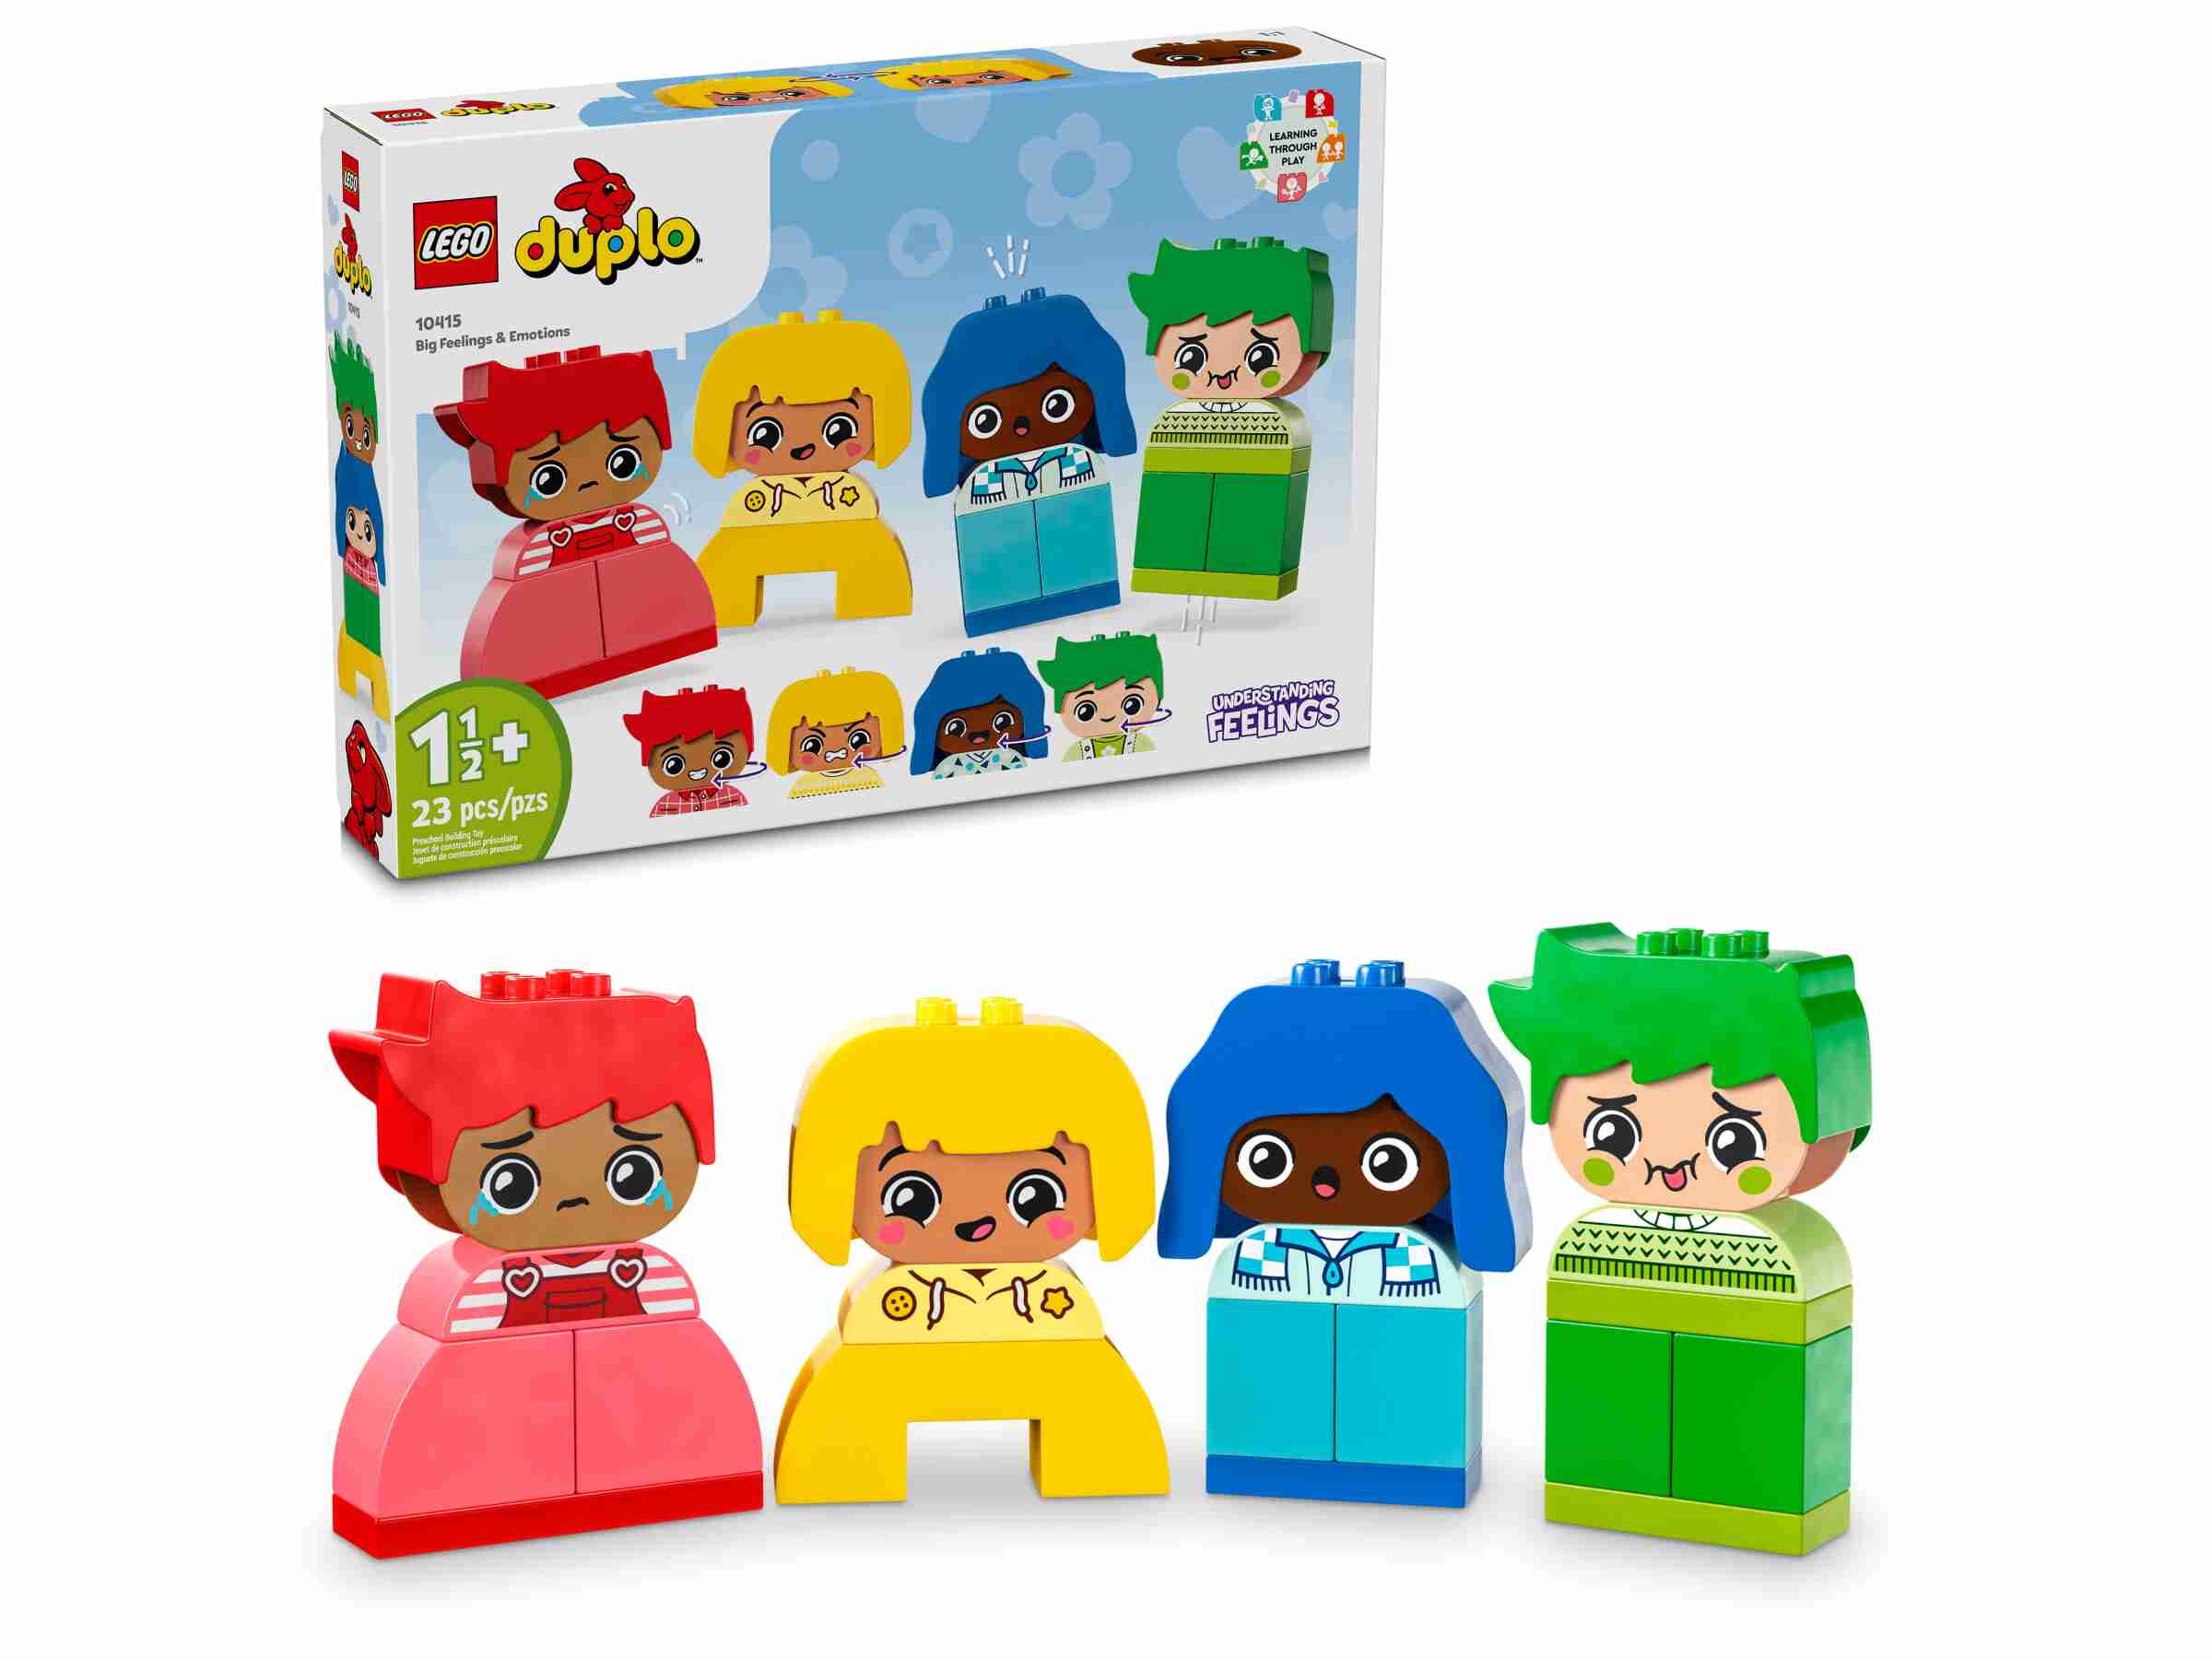 LEGO 10415 DUPLO Große Gefühle, 4 Figuren mit jeweils 2 Gesichtern